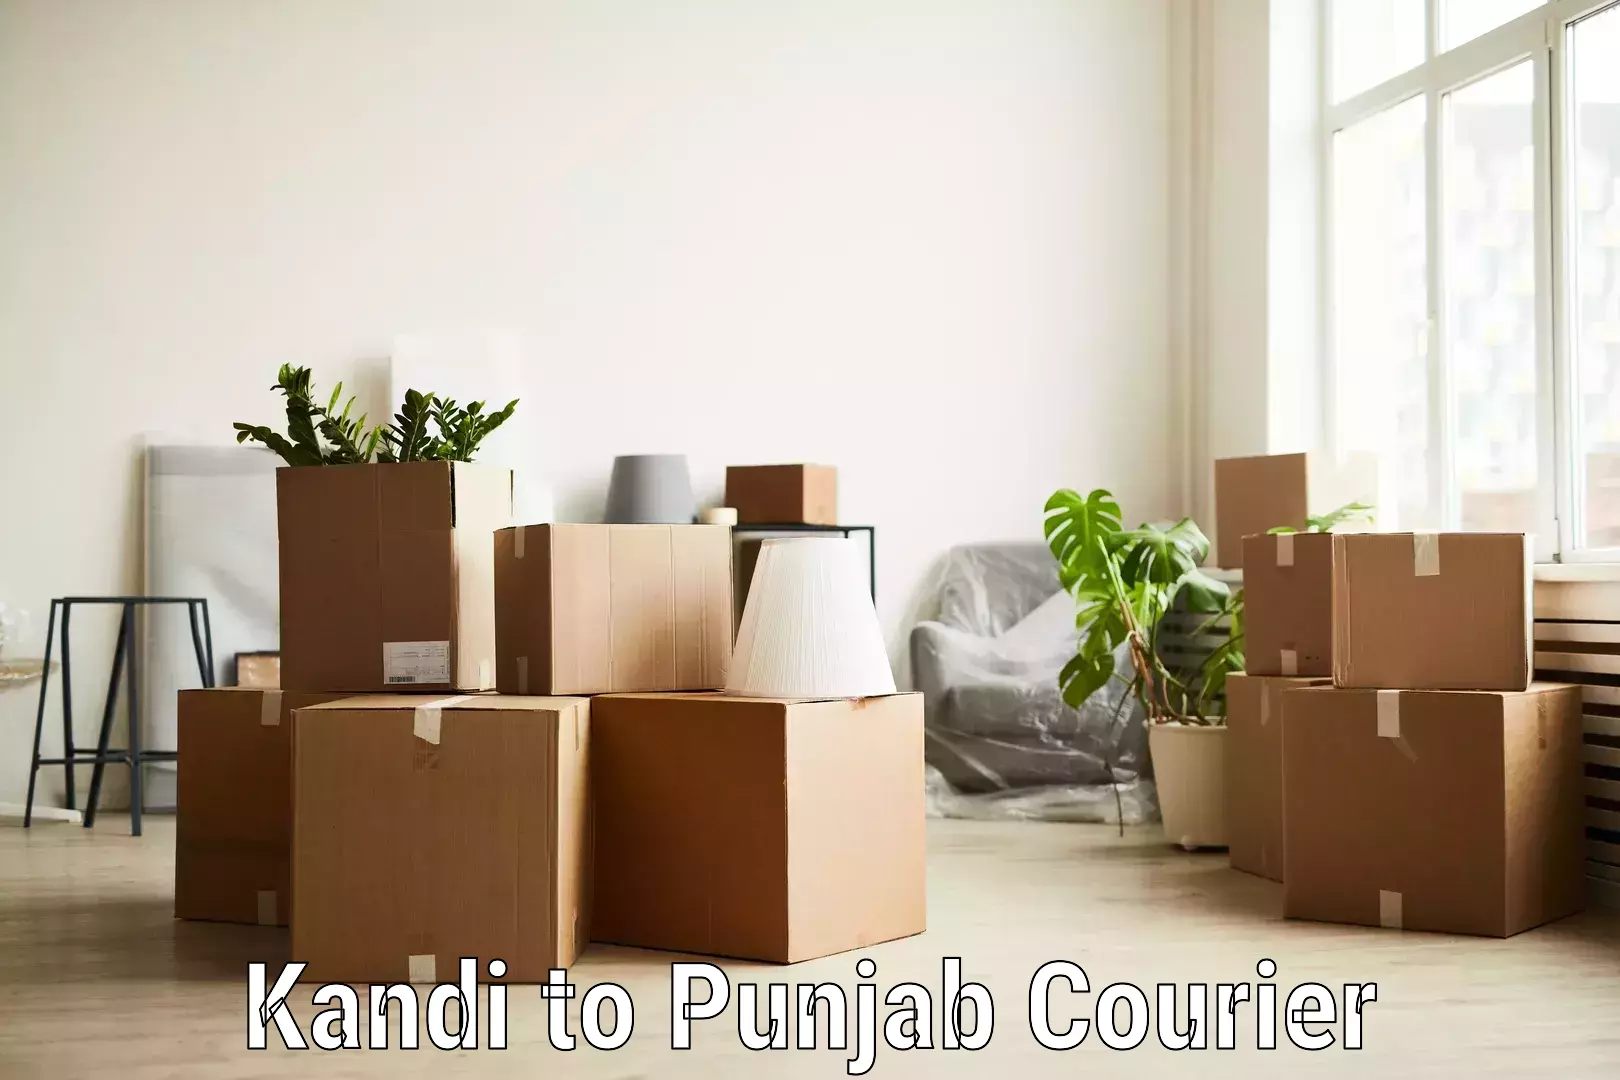 Package tracking Kandi to Sangrur